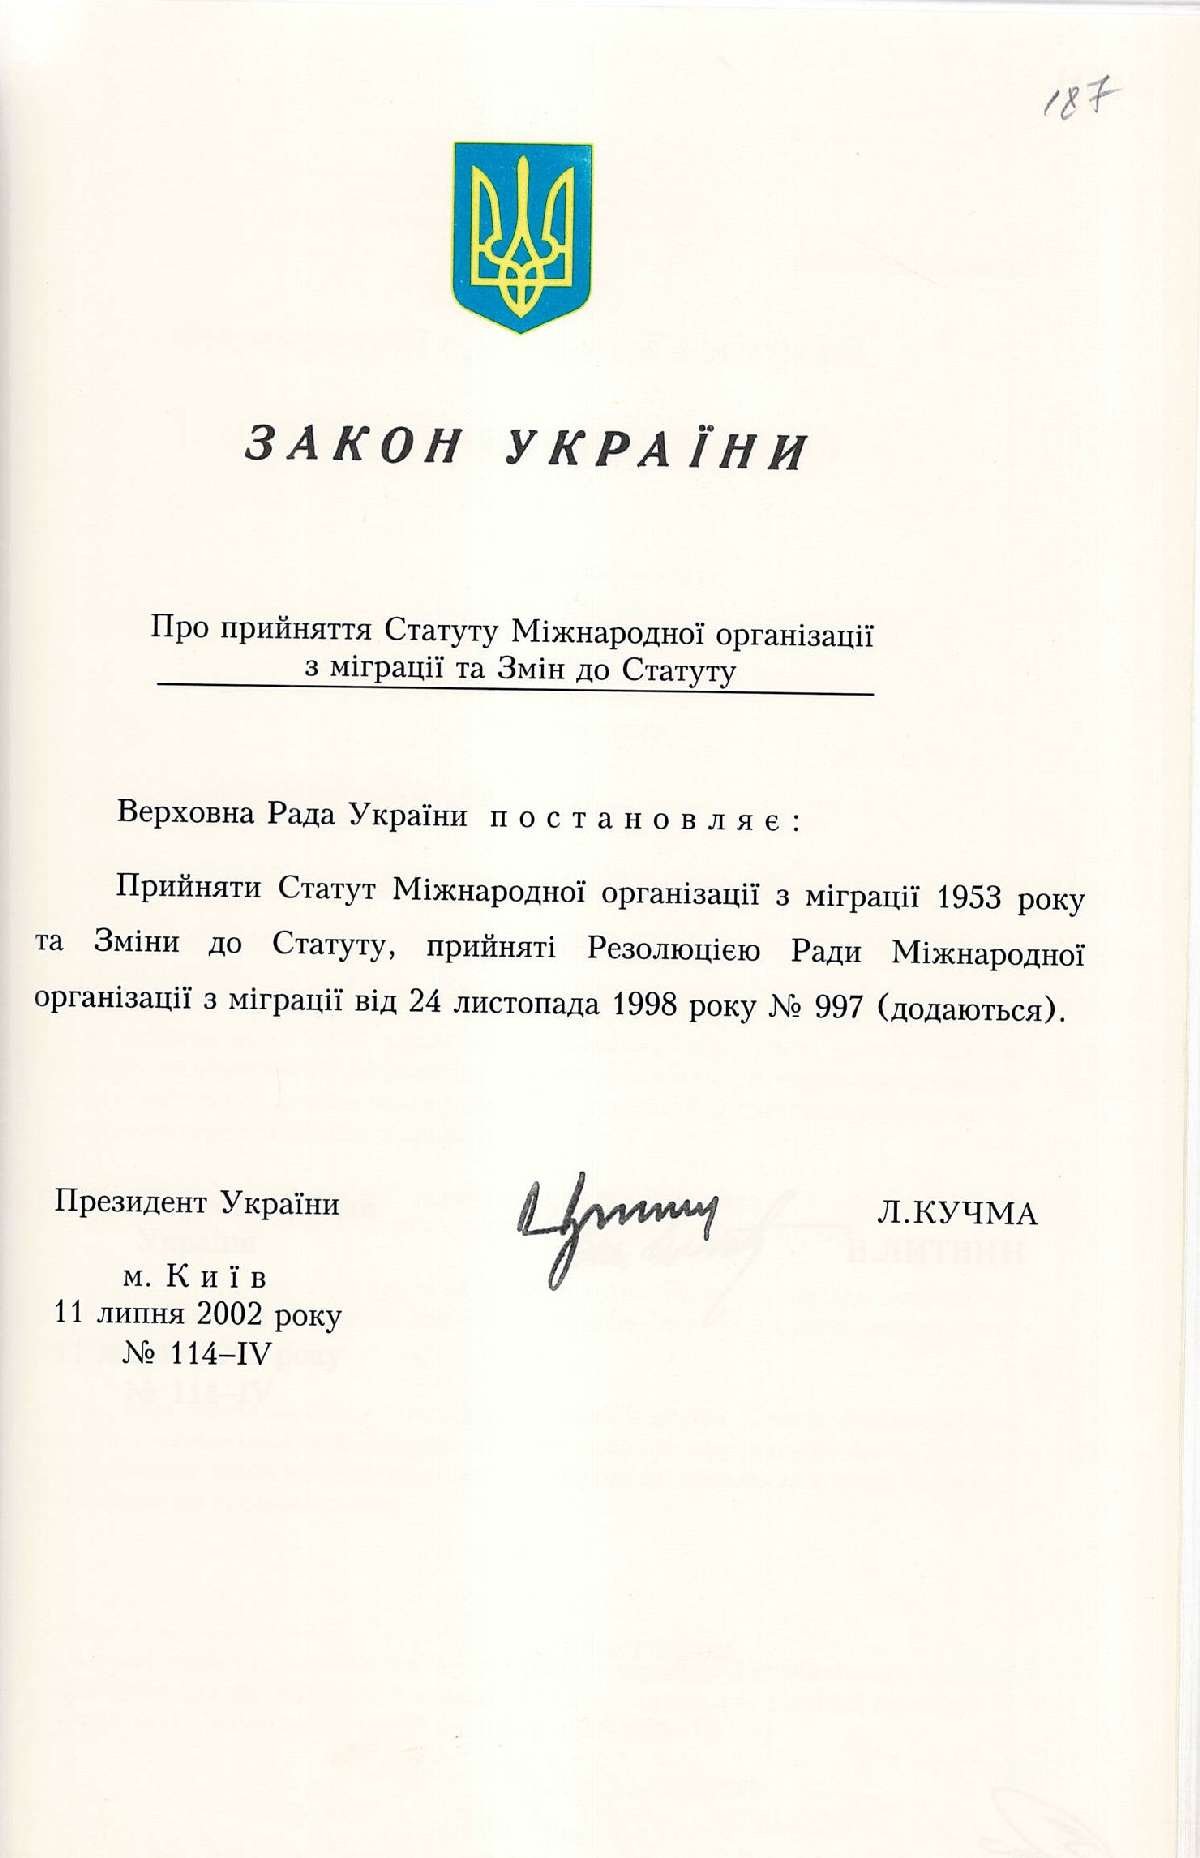 Закон України № 114-ІV «Про прийняття Статуту Міжнародної організації з міграції та Змін до Статуту». 11 липня 2002 р.